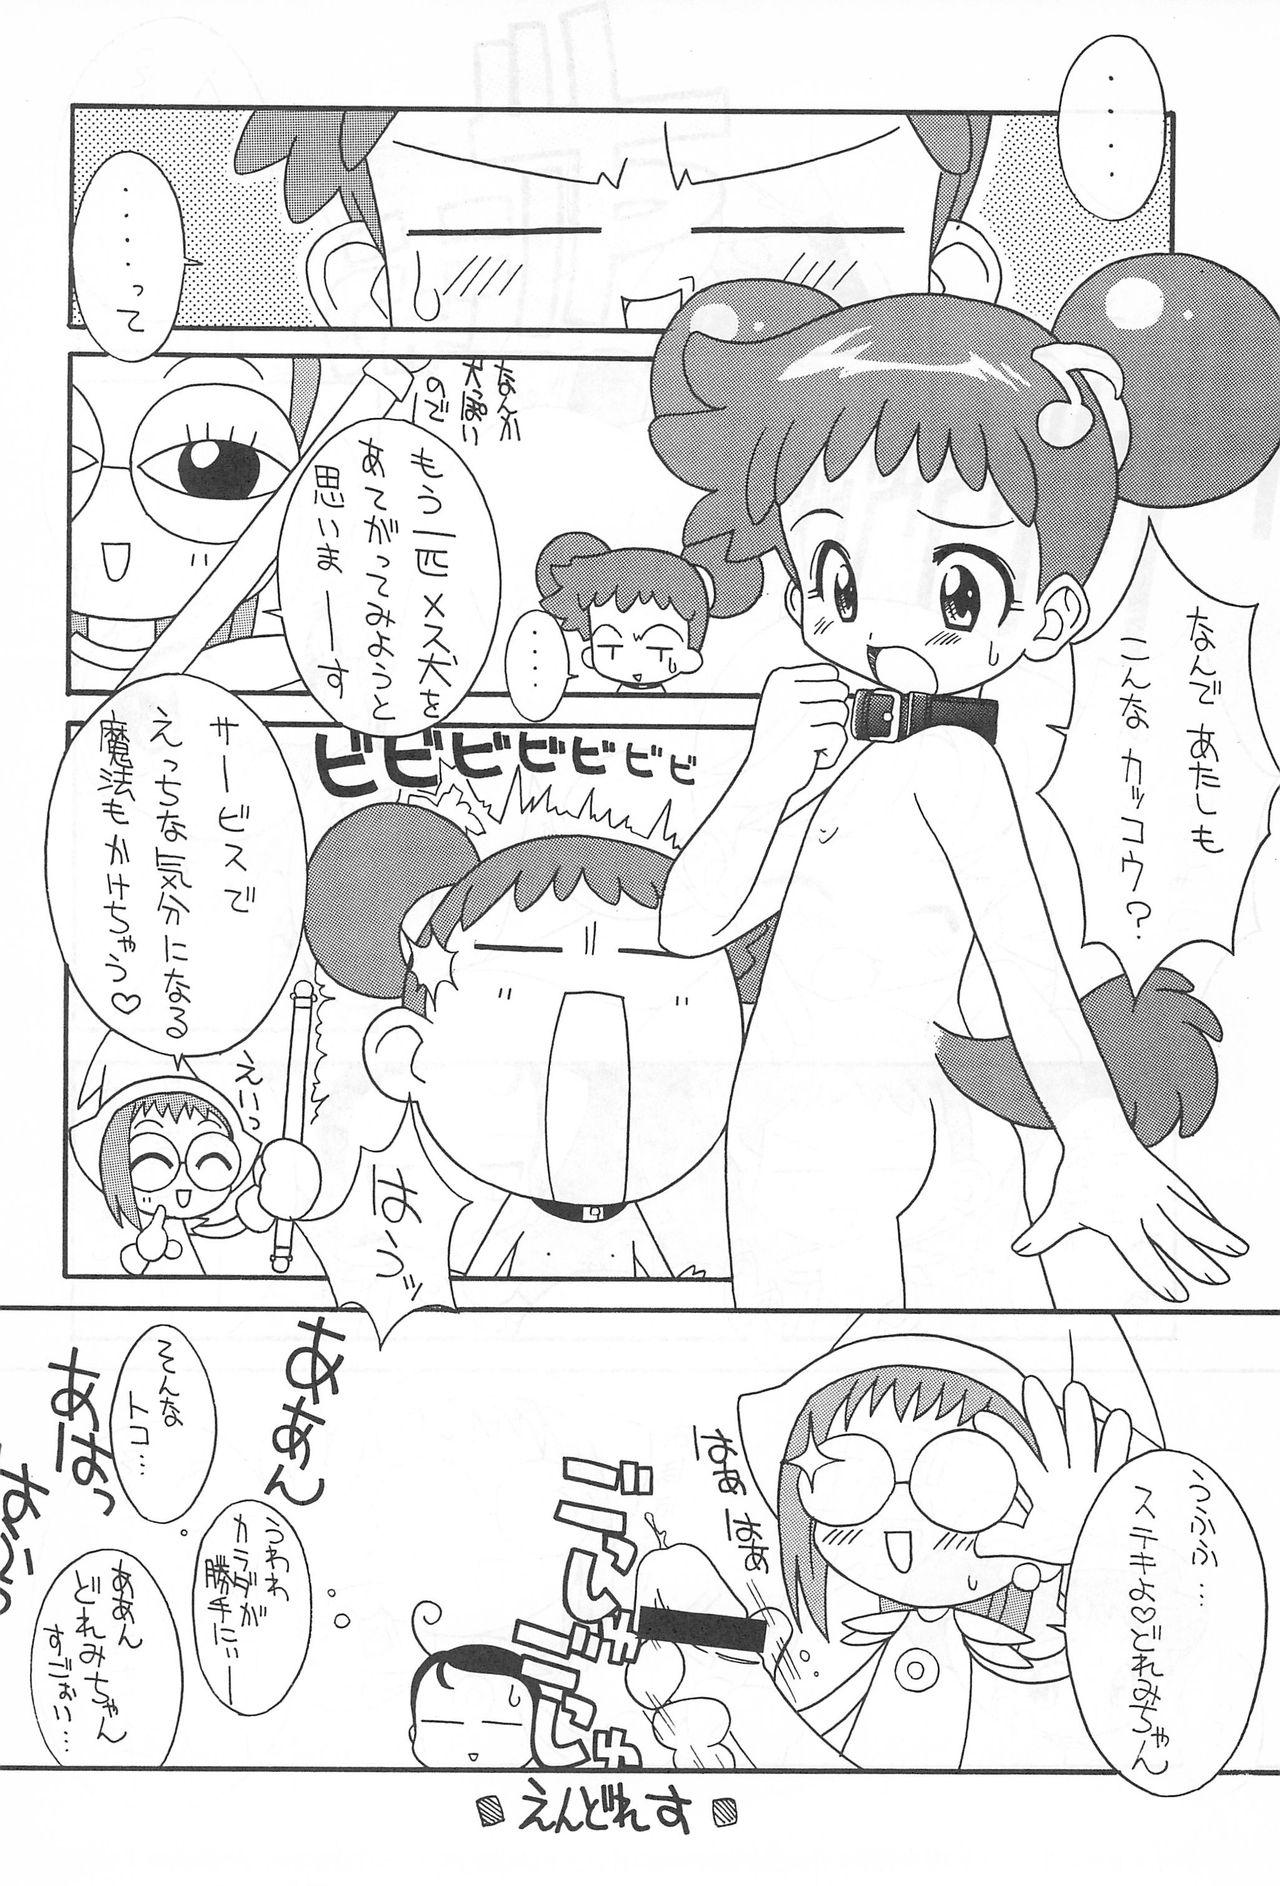 Woman Pretty Ecchi - Ojamajo doremi Massage Creep - Page 10